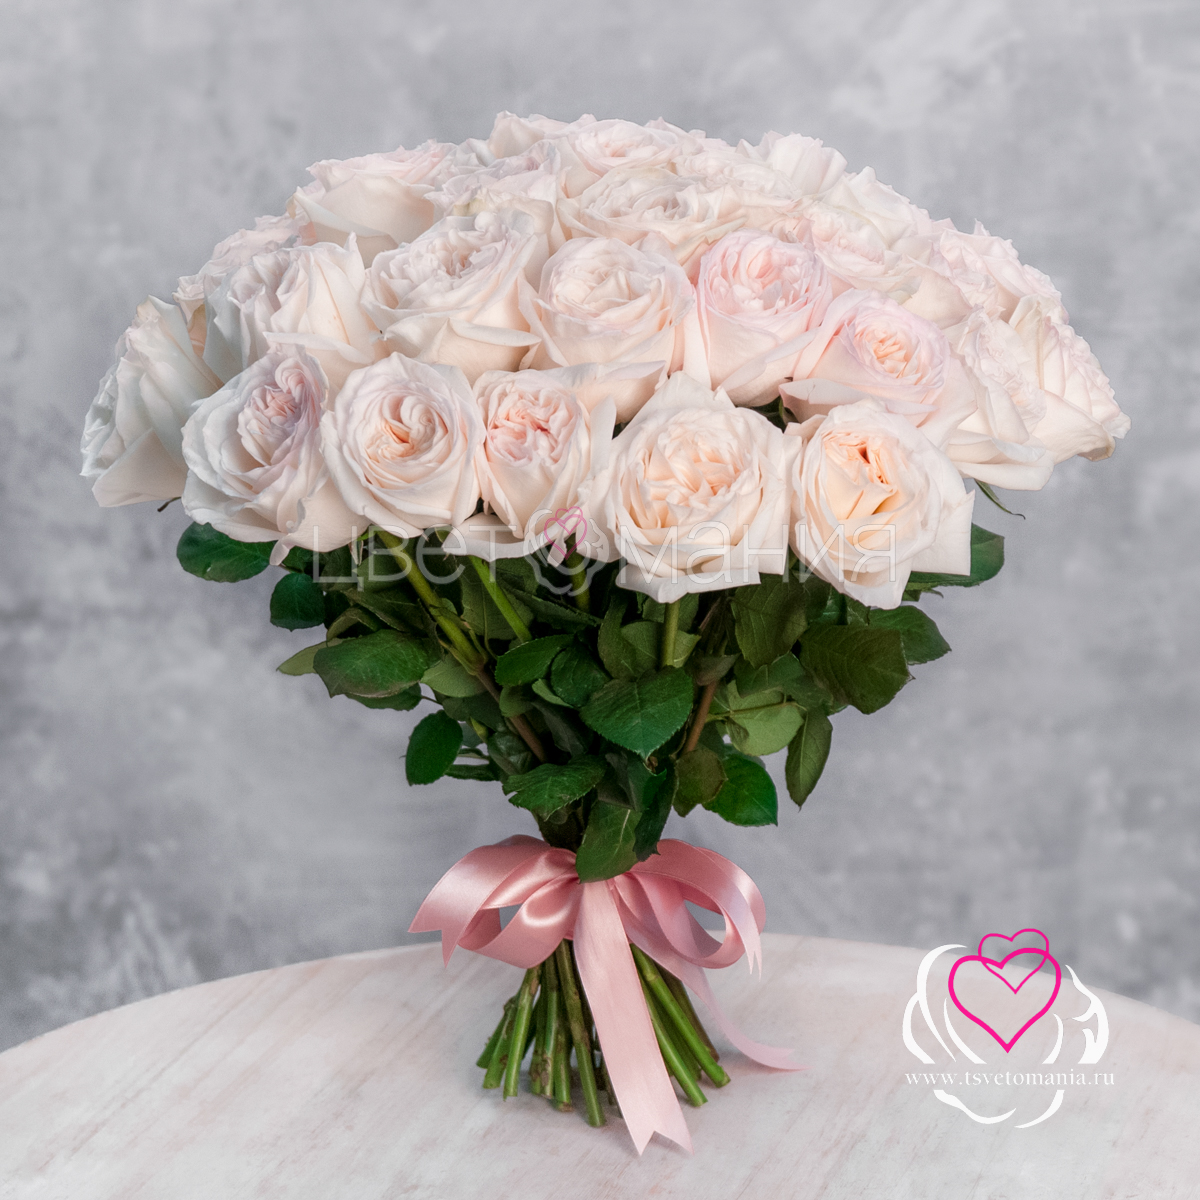 Пионовидная роза Вайт Охара 51 розовая пионовидная роза talisman 40 см